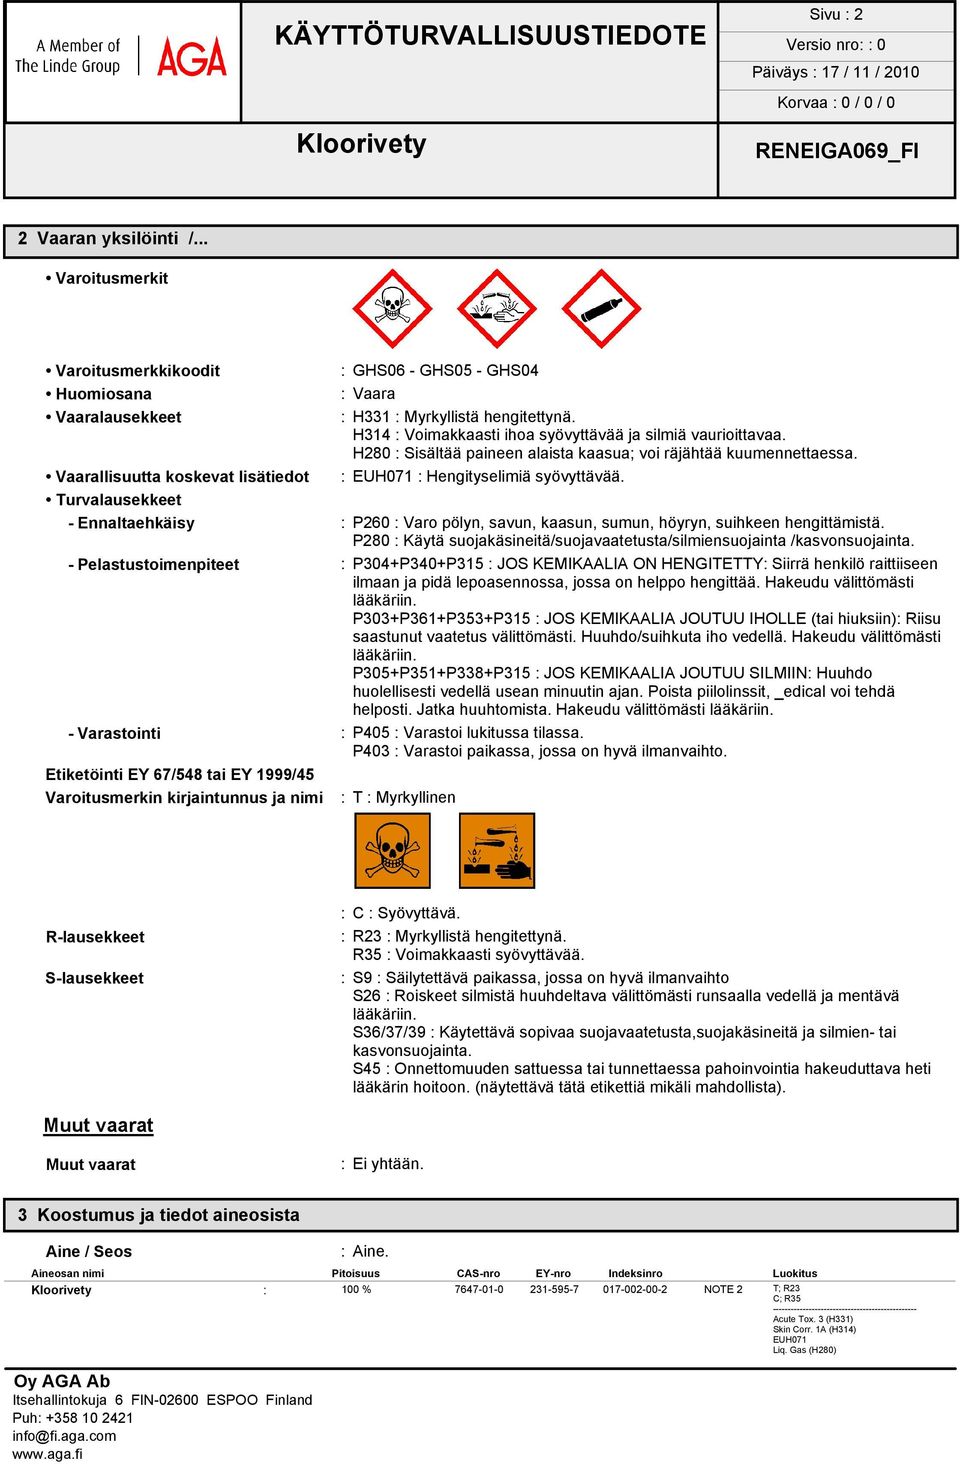 Turvalausekkeet - Ennaltaehkäisy : P260 : Varo pölyn, savun, kaasun, sumun, höyryn, suihkeen hengittämistä. P280 : Käytä suojakäsineitä/suojavaatetusta/silmiensuojainta /kasvonsuojainta.